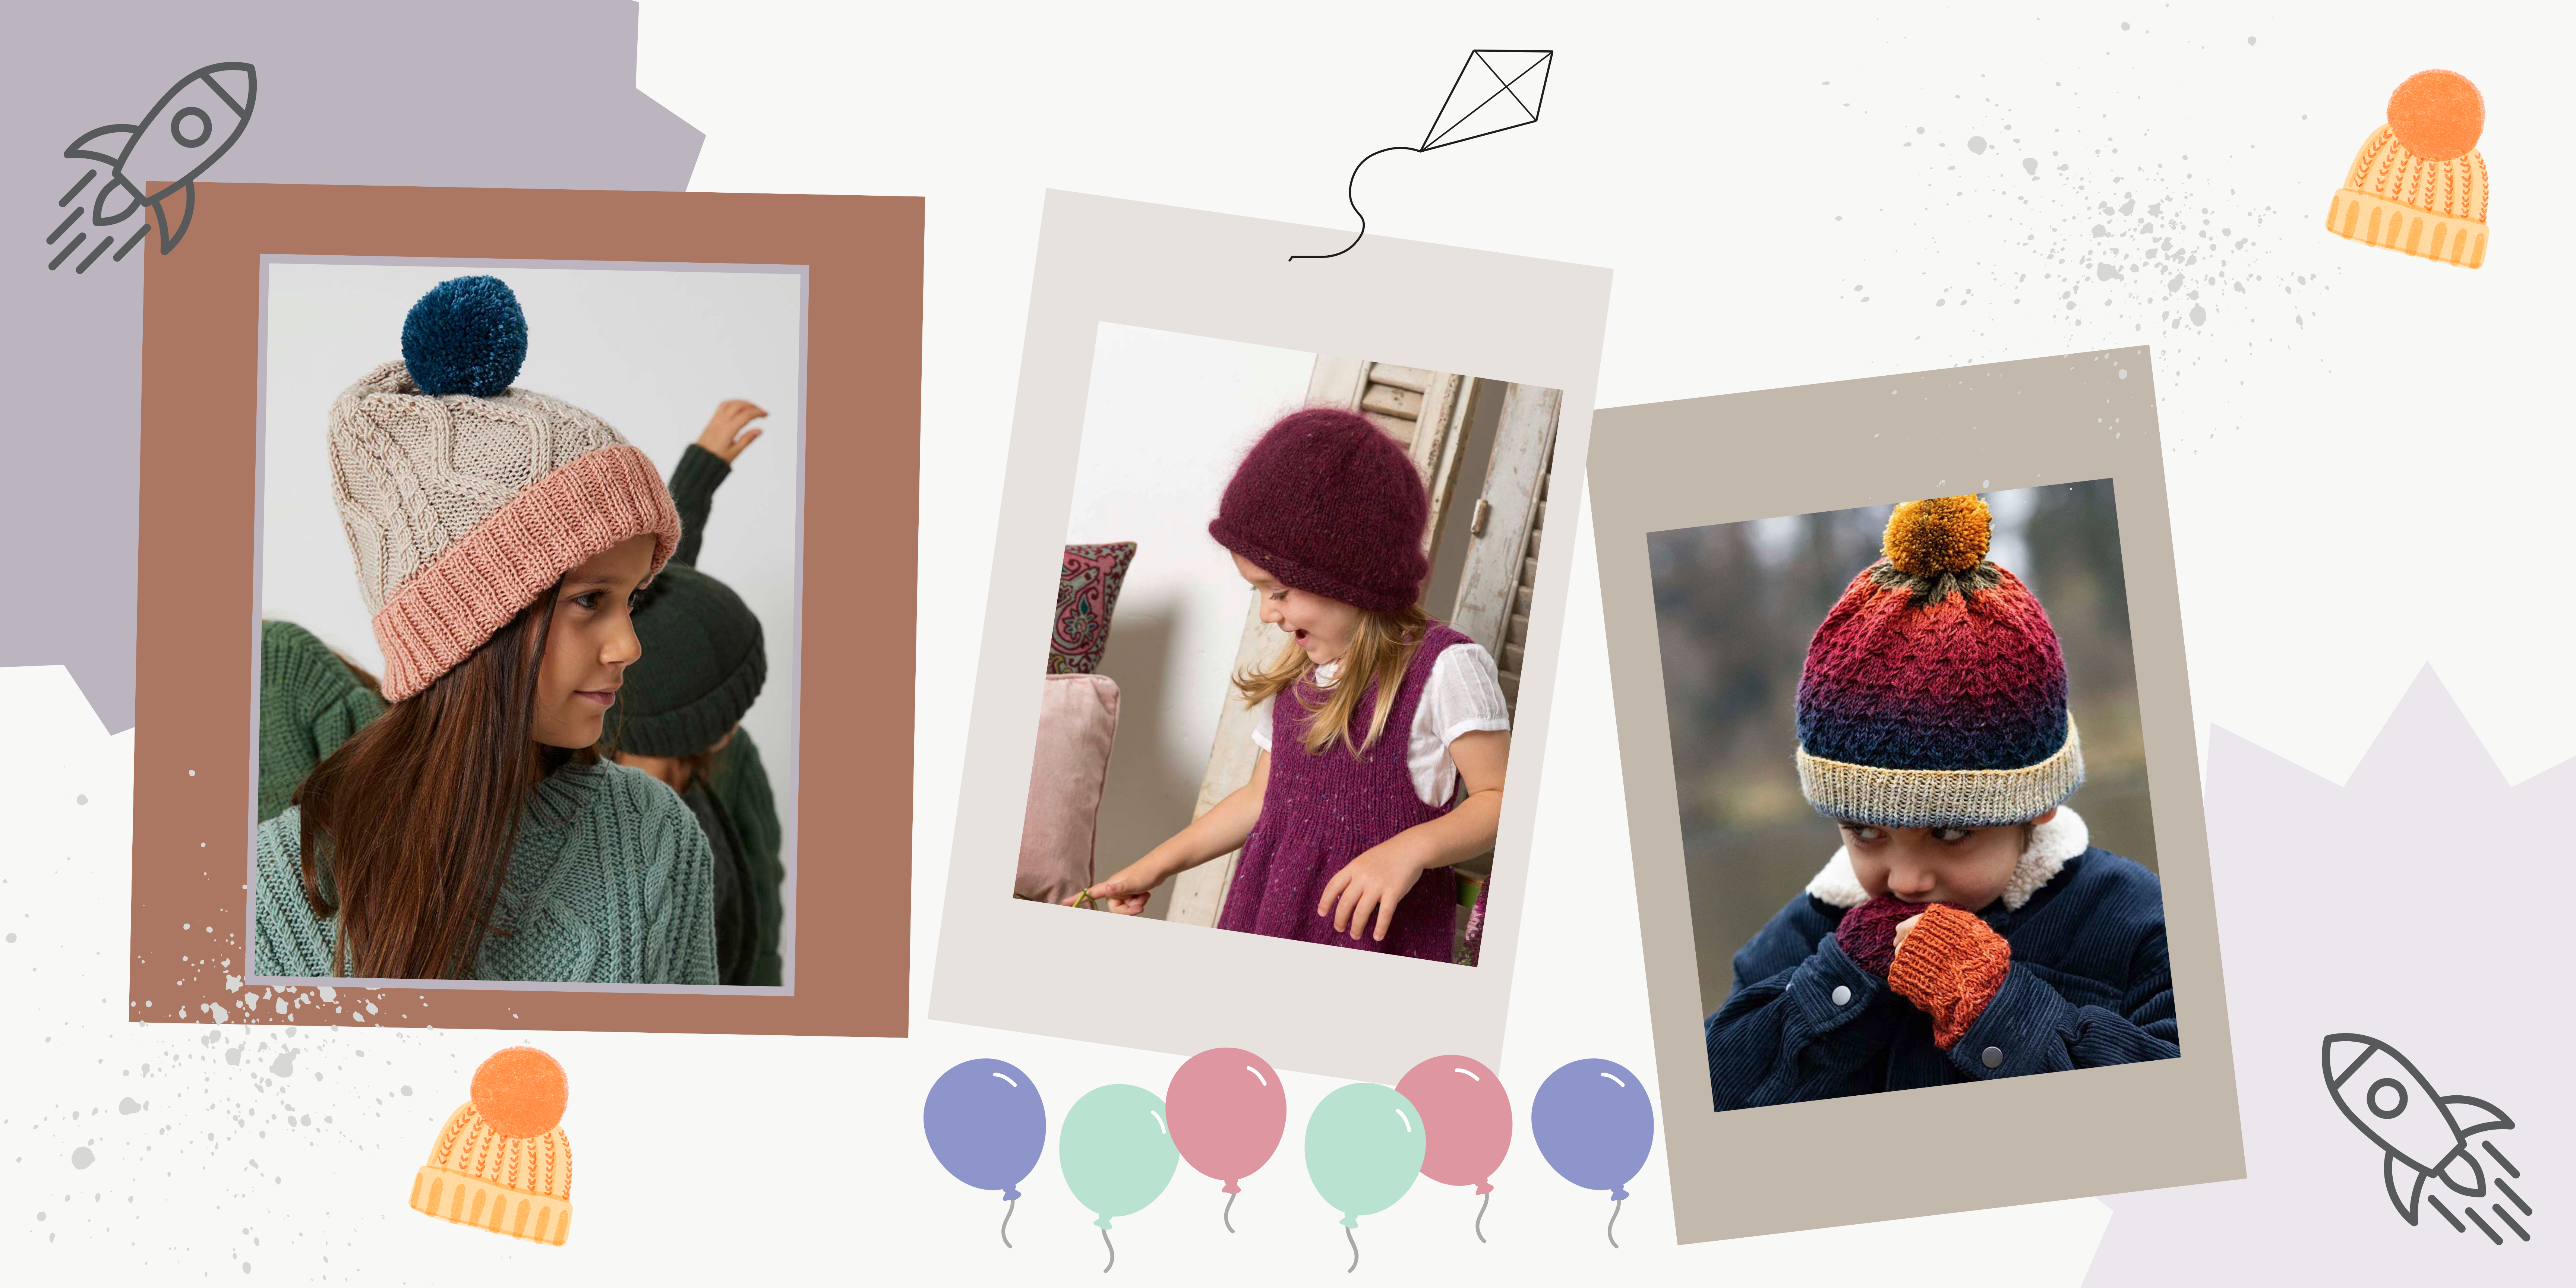 14 modèles pour tricoter un bonnet pour enfant - Marie Claire